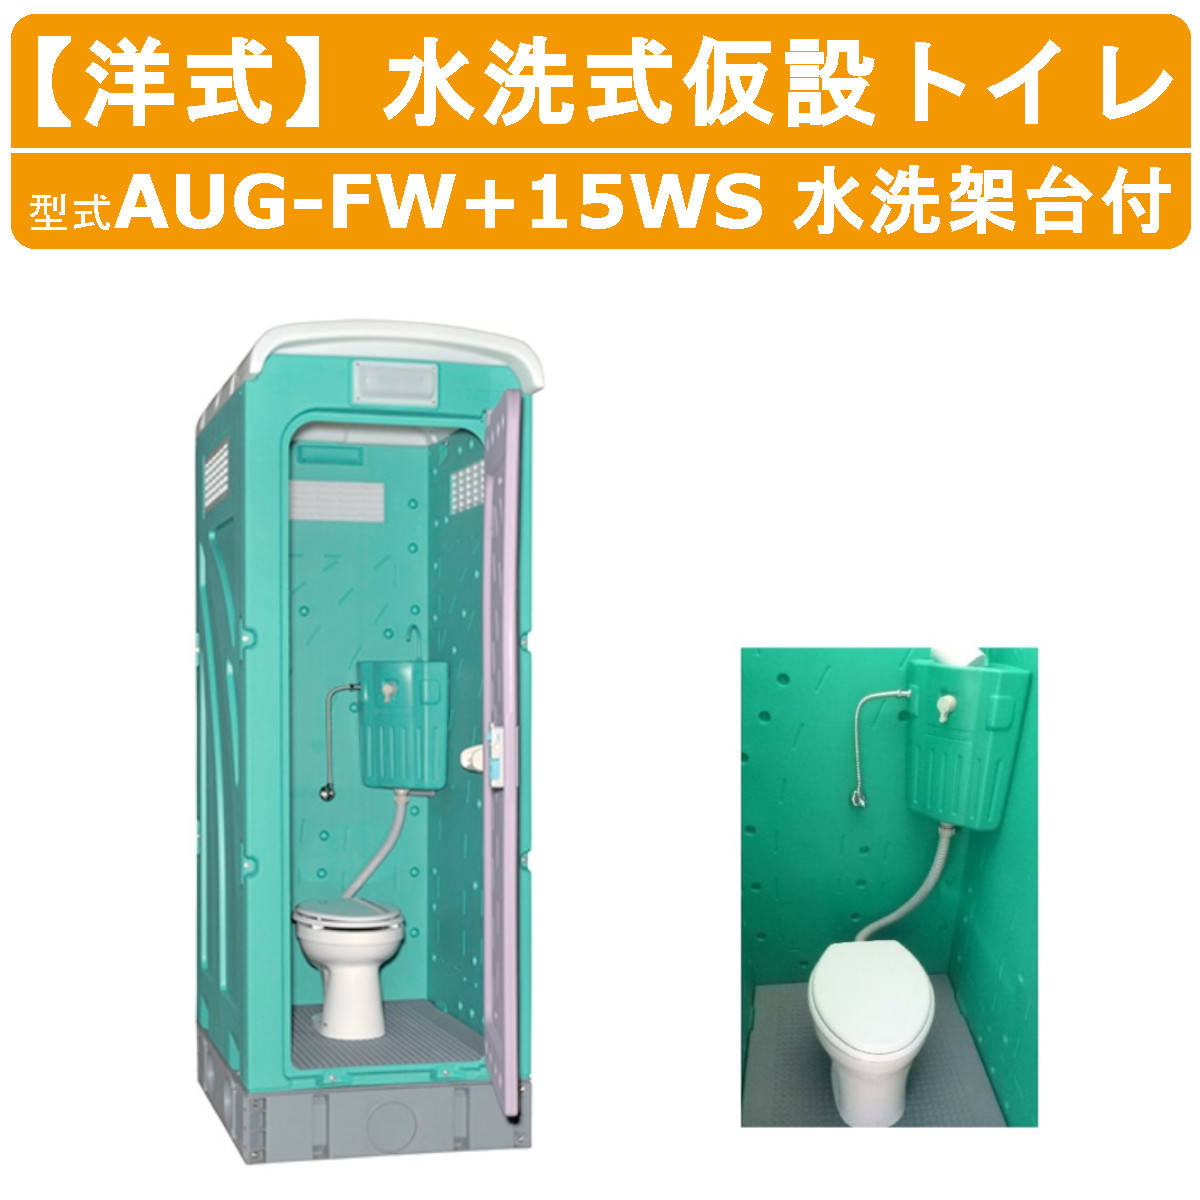 旭ハウス工業 仮設トイレ 水洗式 AUG-FW+15WS 洋式 兼用水洗架台付